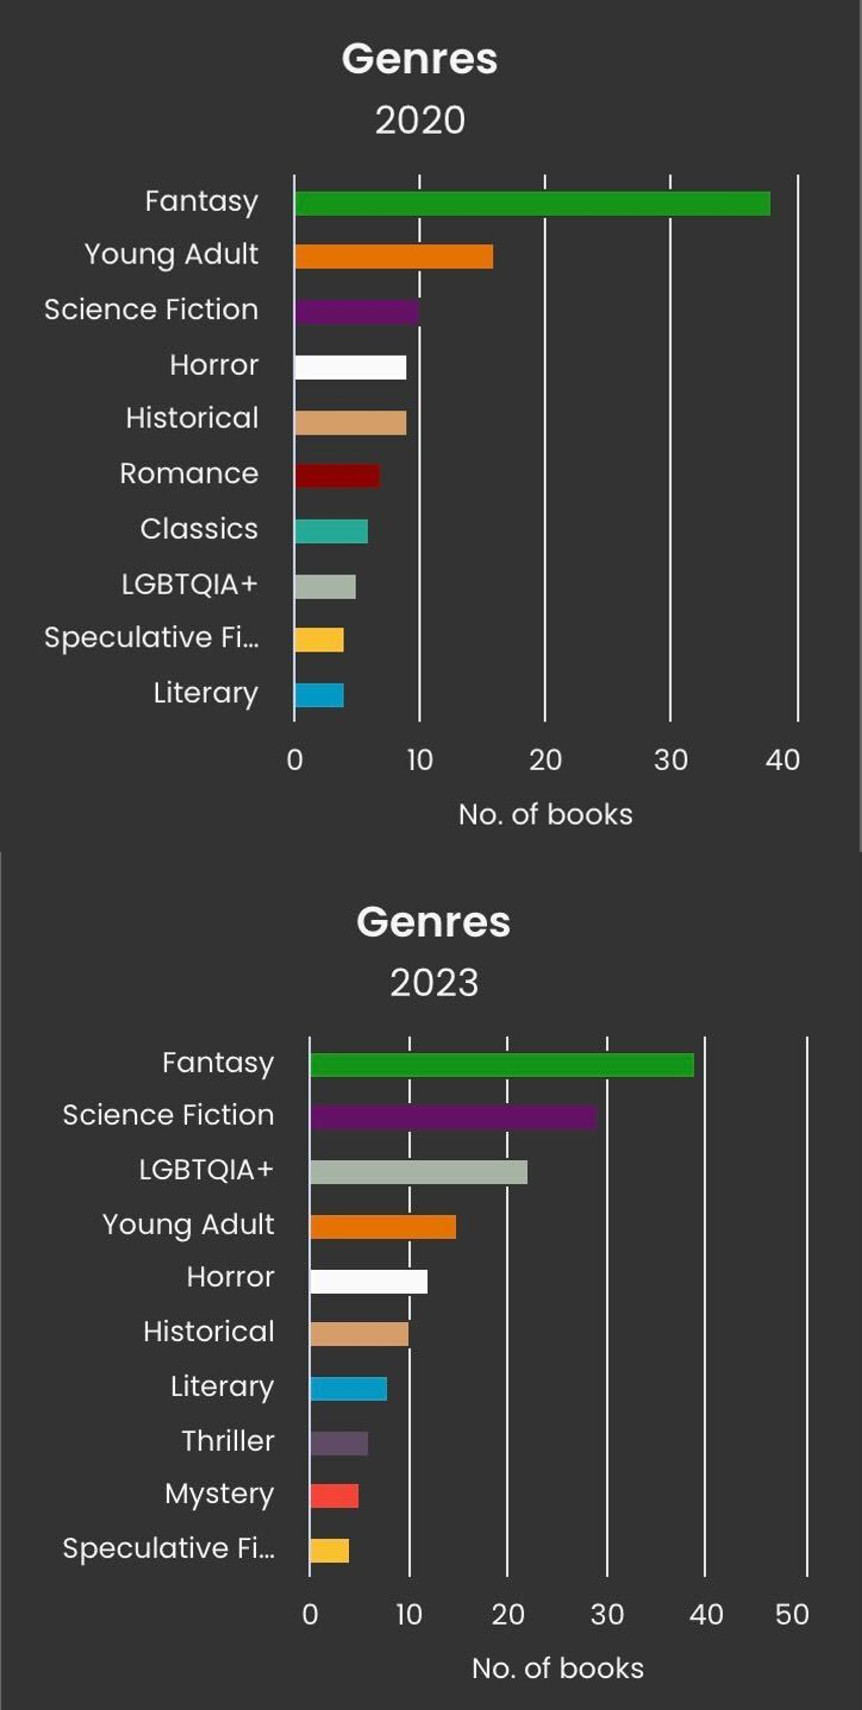 Et skærmbillede af StoryGraph, der viser to stablede søjlediagrammer. Toppen er for genrer af bøger læst i 2020, toppet af fantasy efterfulgt af unge voksne. Bunden er for genrer af bøger læst i 2023, toppet af fantasy efterfulgt af sci-fi.